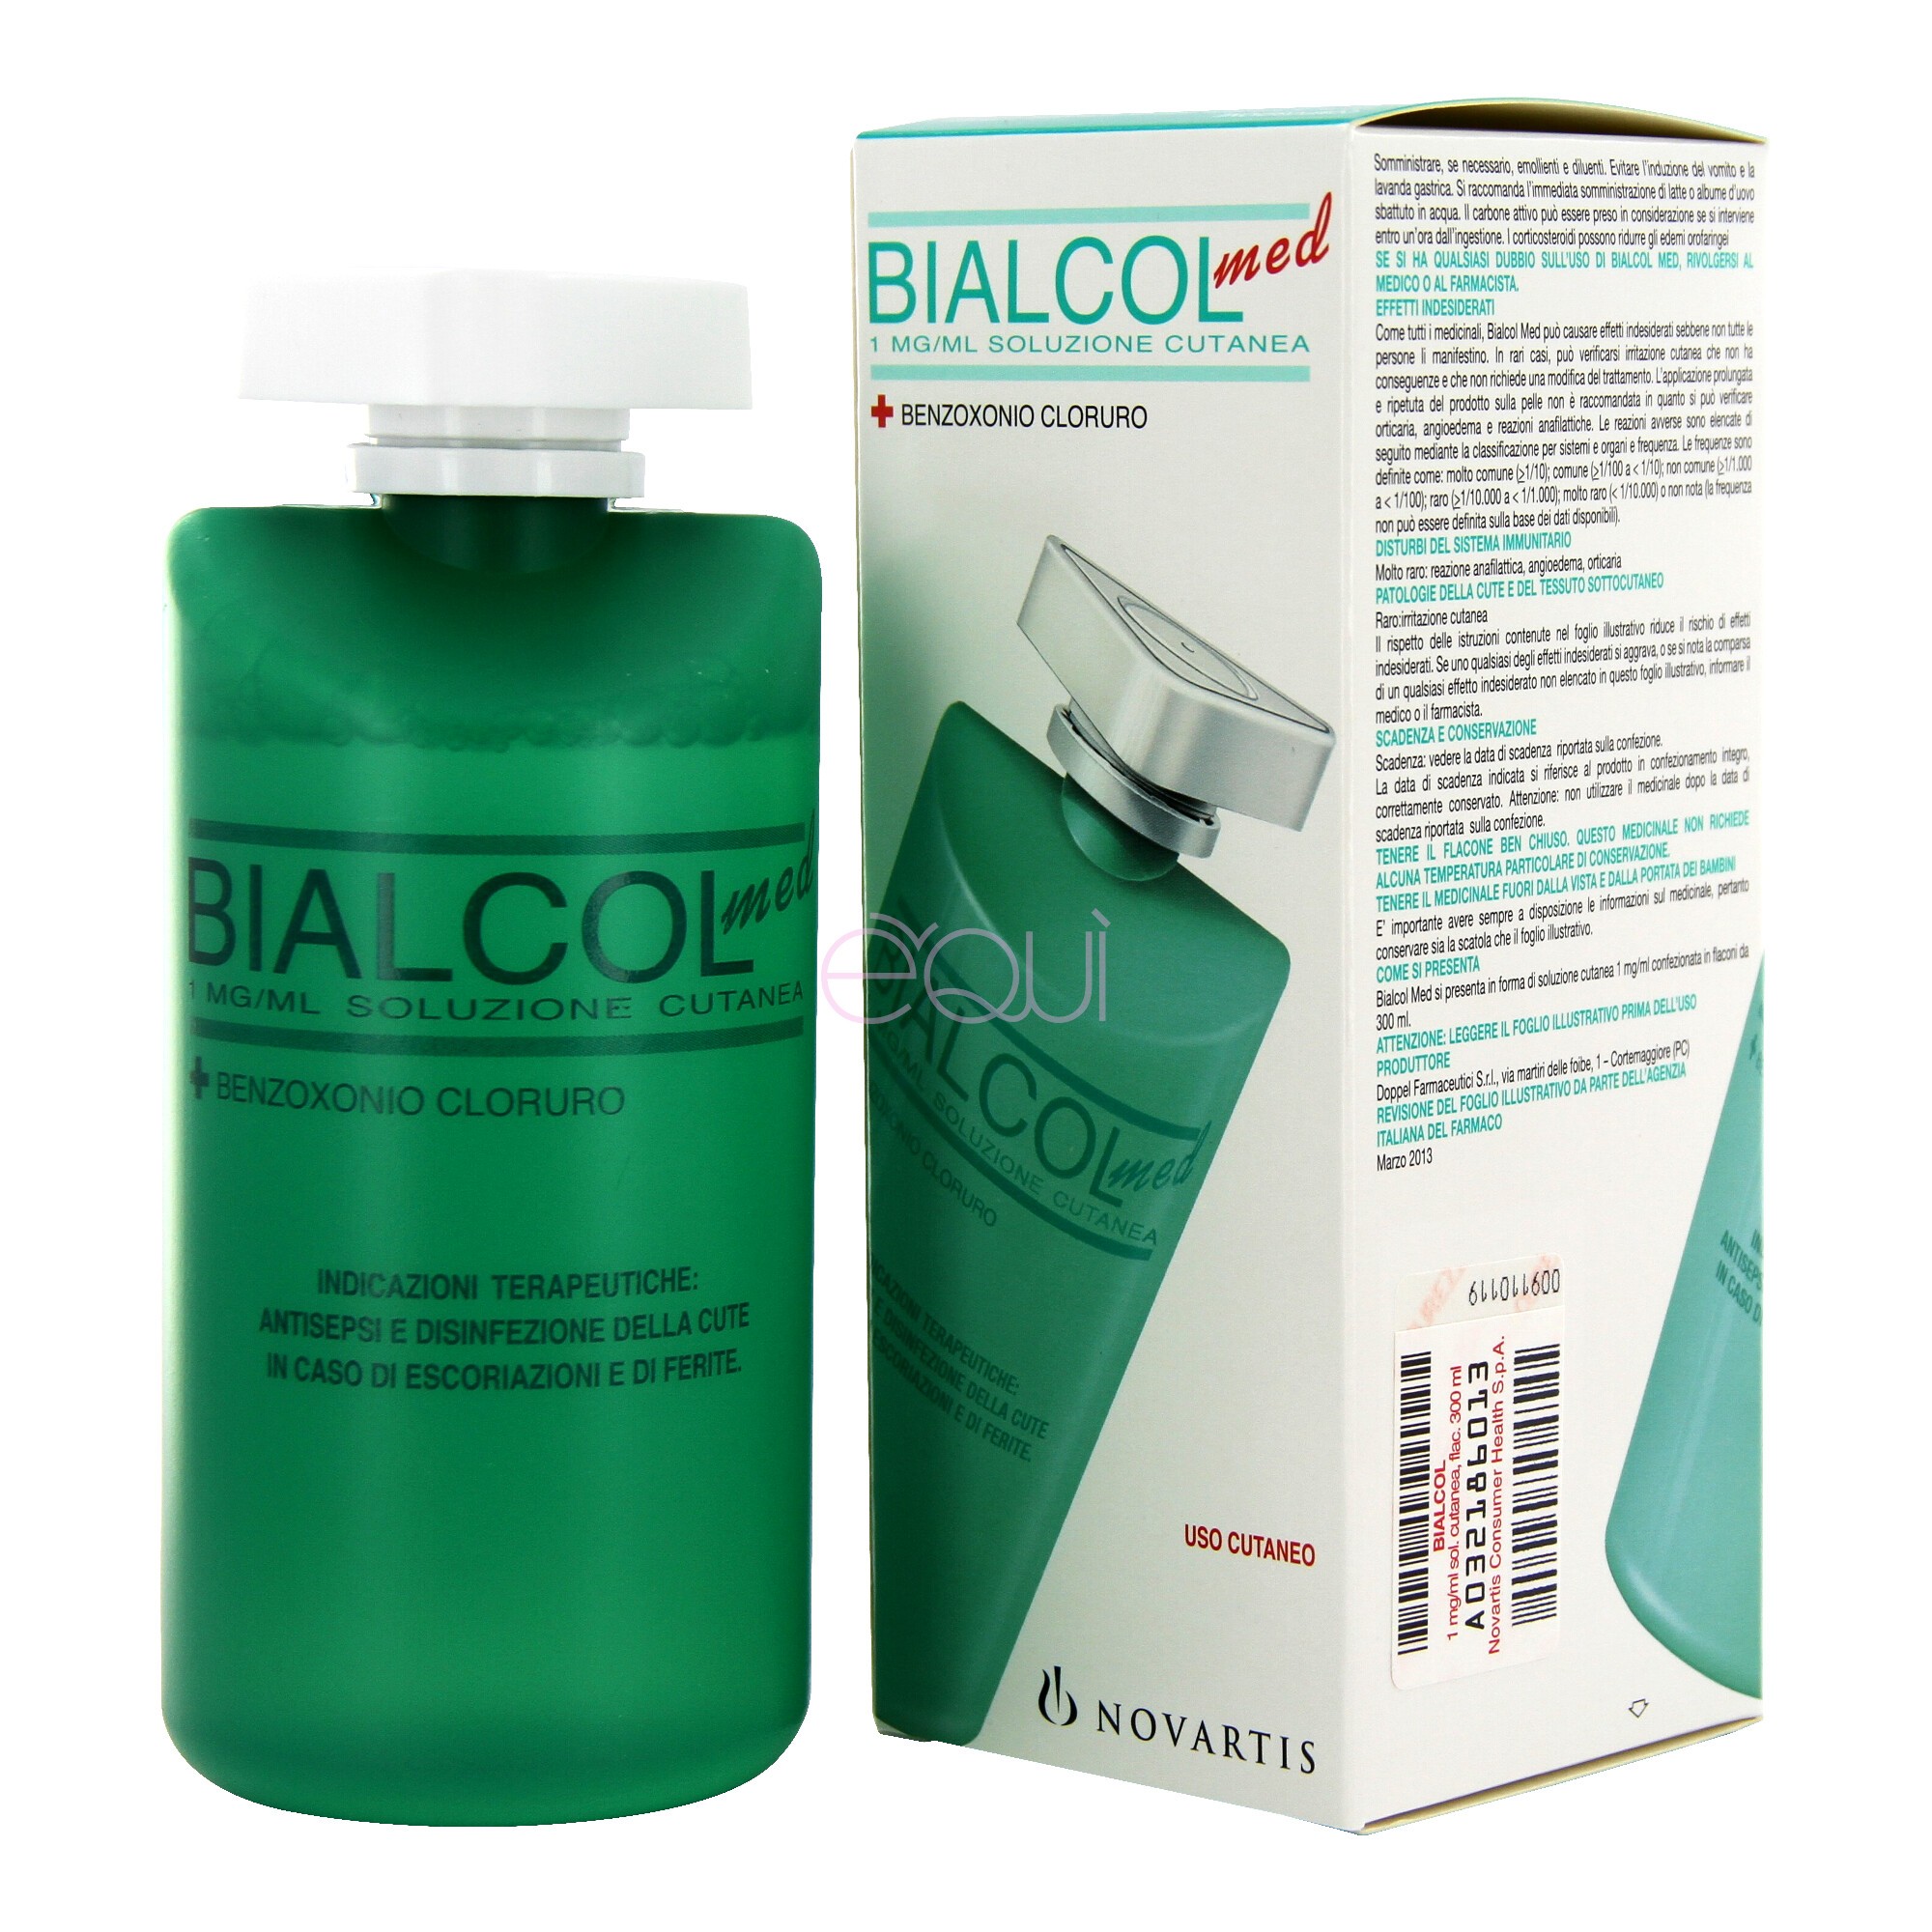 Bialcol Med Soluzione Cutanea Disinfettante Cute e Ferite 300 ml 0,1%